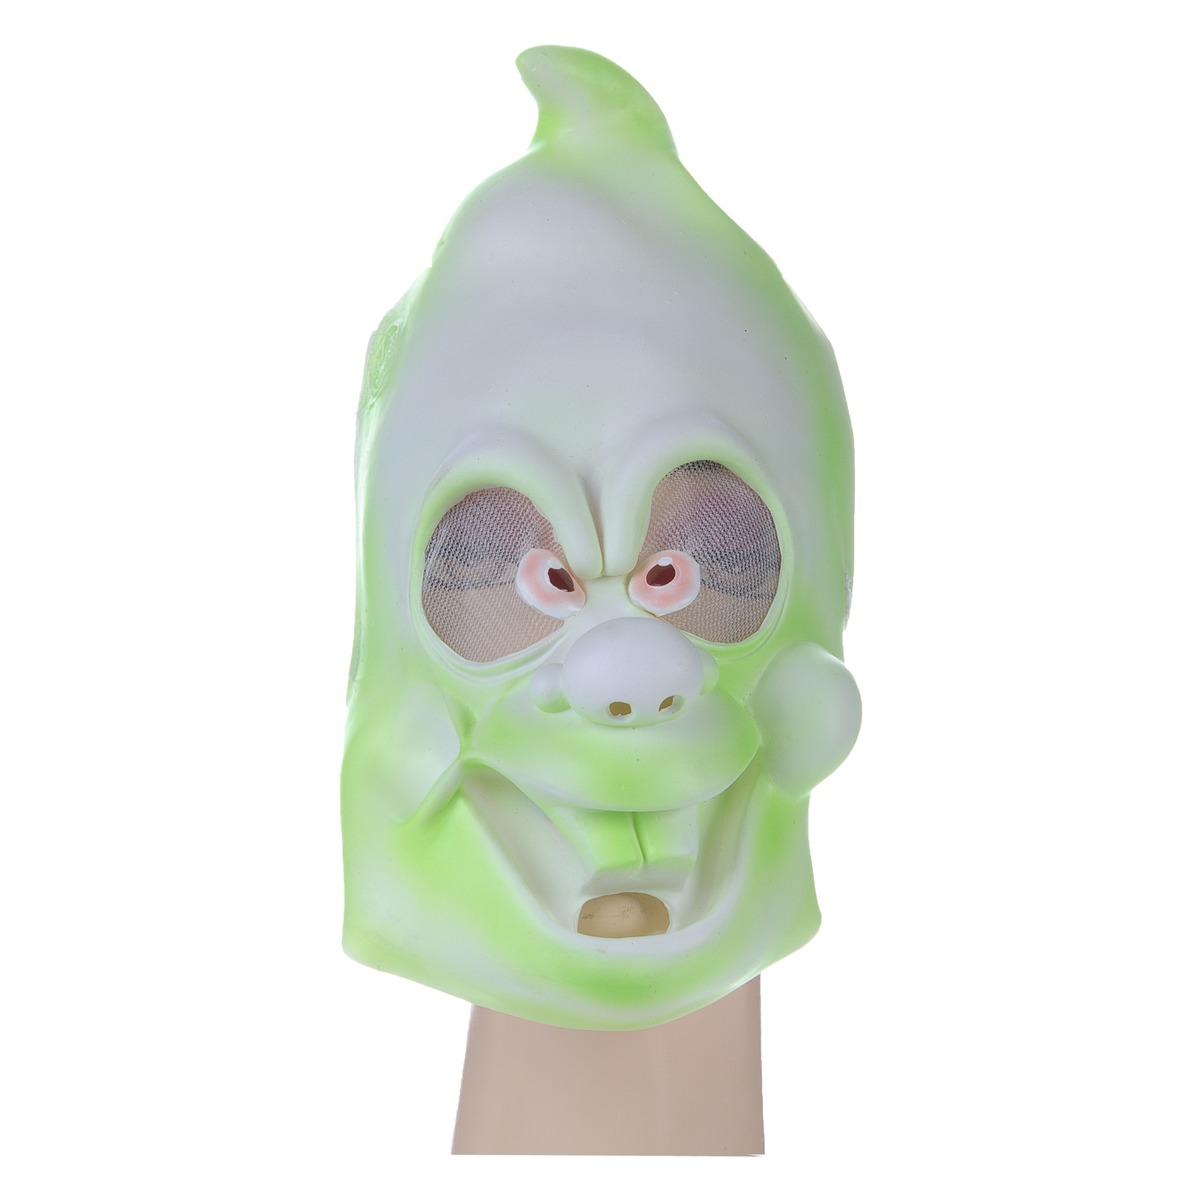 Masque fantôme en PVC pour enfant - taille unique - Vert